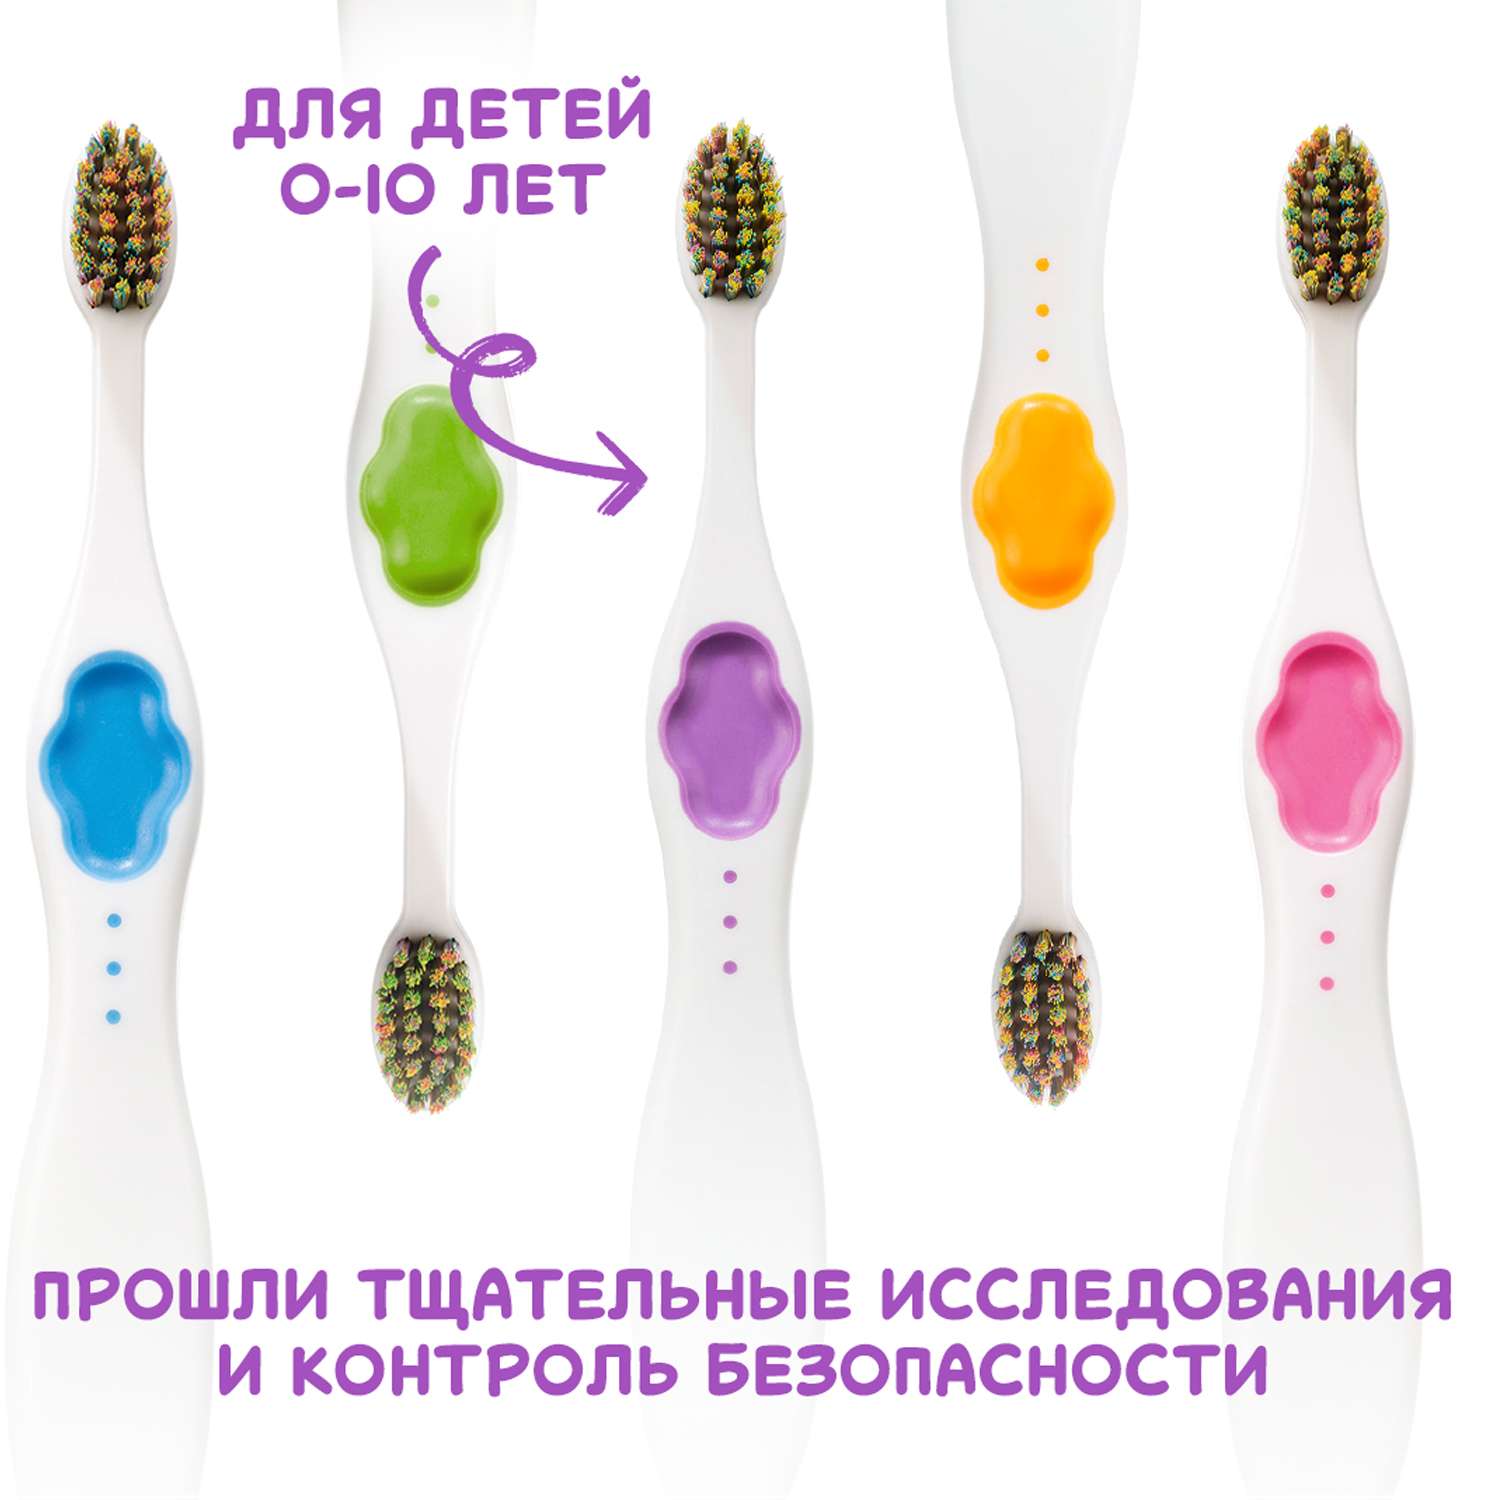 Подарочный набор Montcarotte гелеообразная зубная паста Ягодка Вишня + Зубная щетка Фиолетовая - фото 16